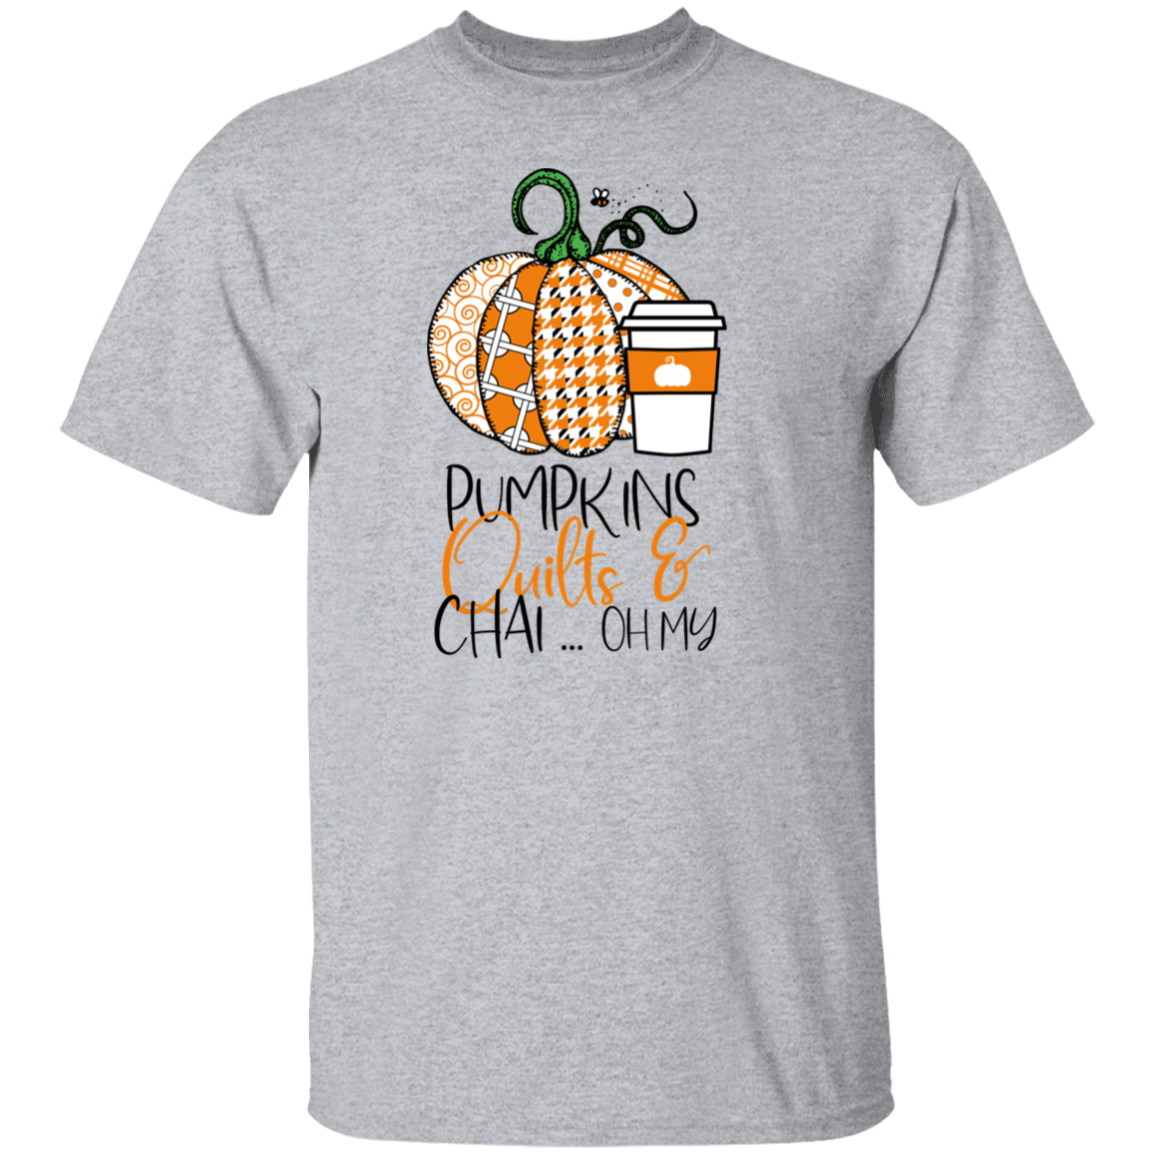 Pumpkins, Quilts & Chai T-Shirt